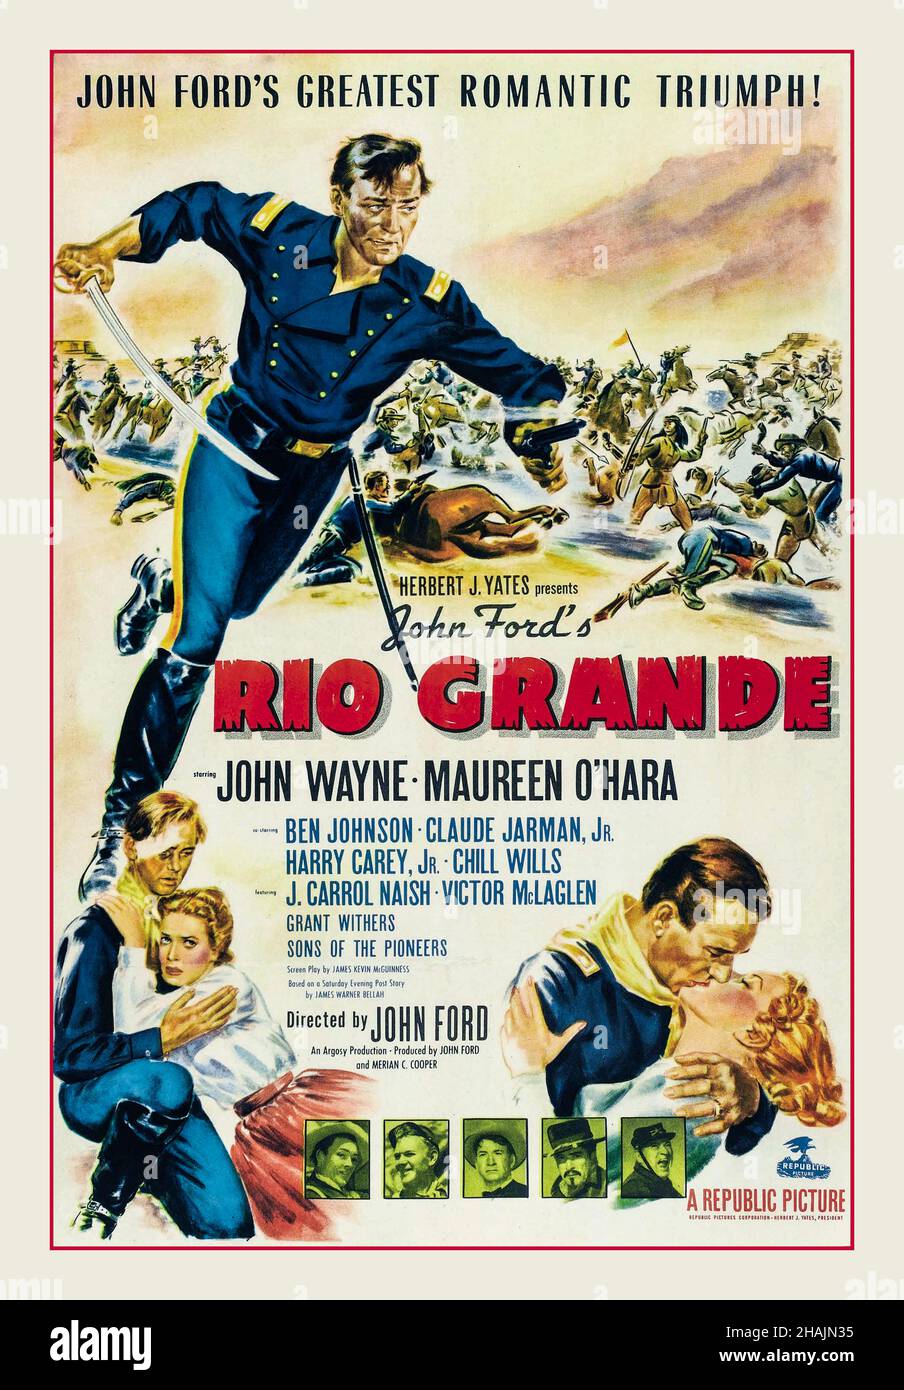 JOHN WAYNE Vintage Movie Film Poster 'Rio Grande' es una película  occidental romántica estadounidense de 1950 dirigida por John Ford, y  protagonizada por John Wayne y Maureen O'Hara. Wayne como Teniente Coronel